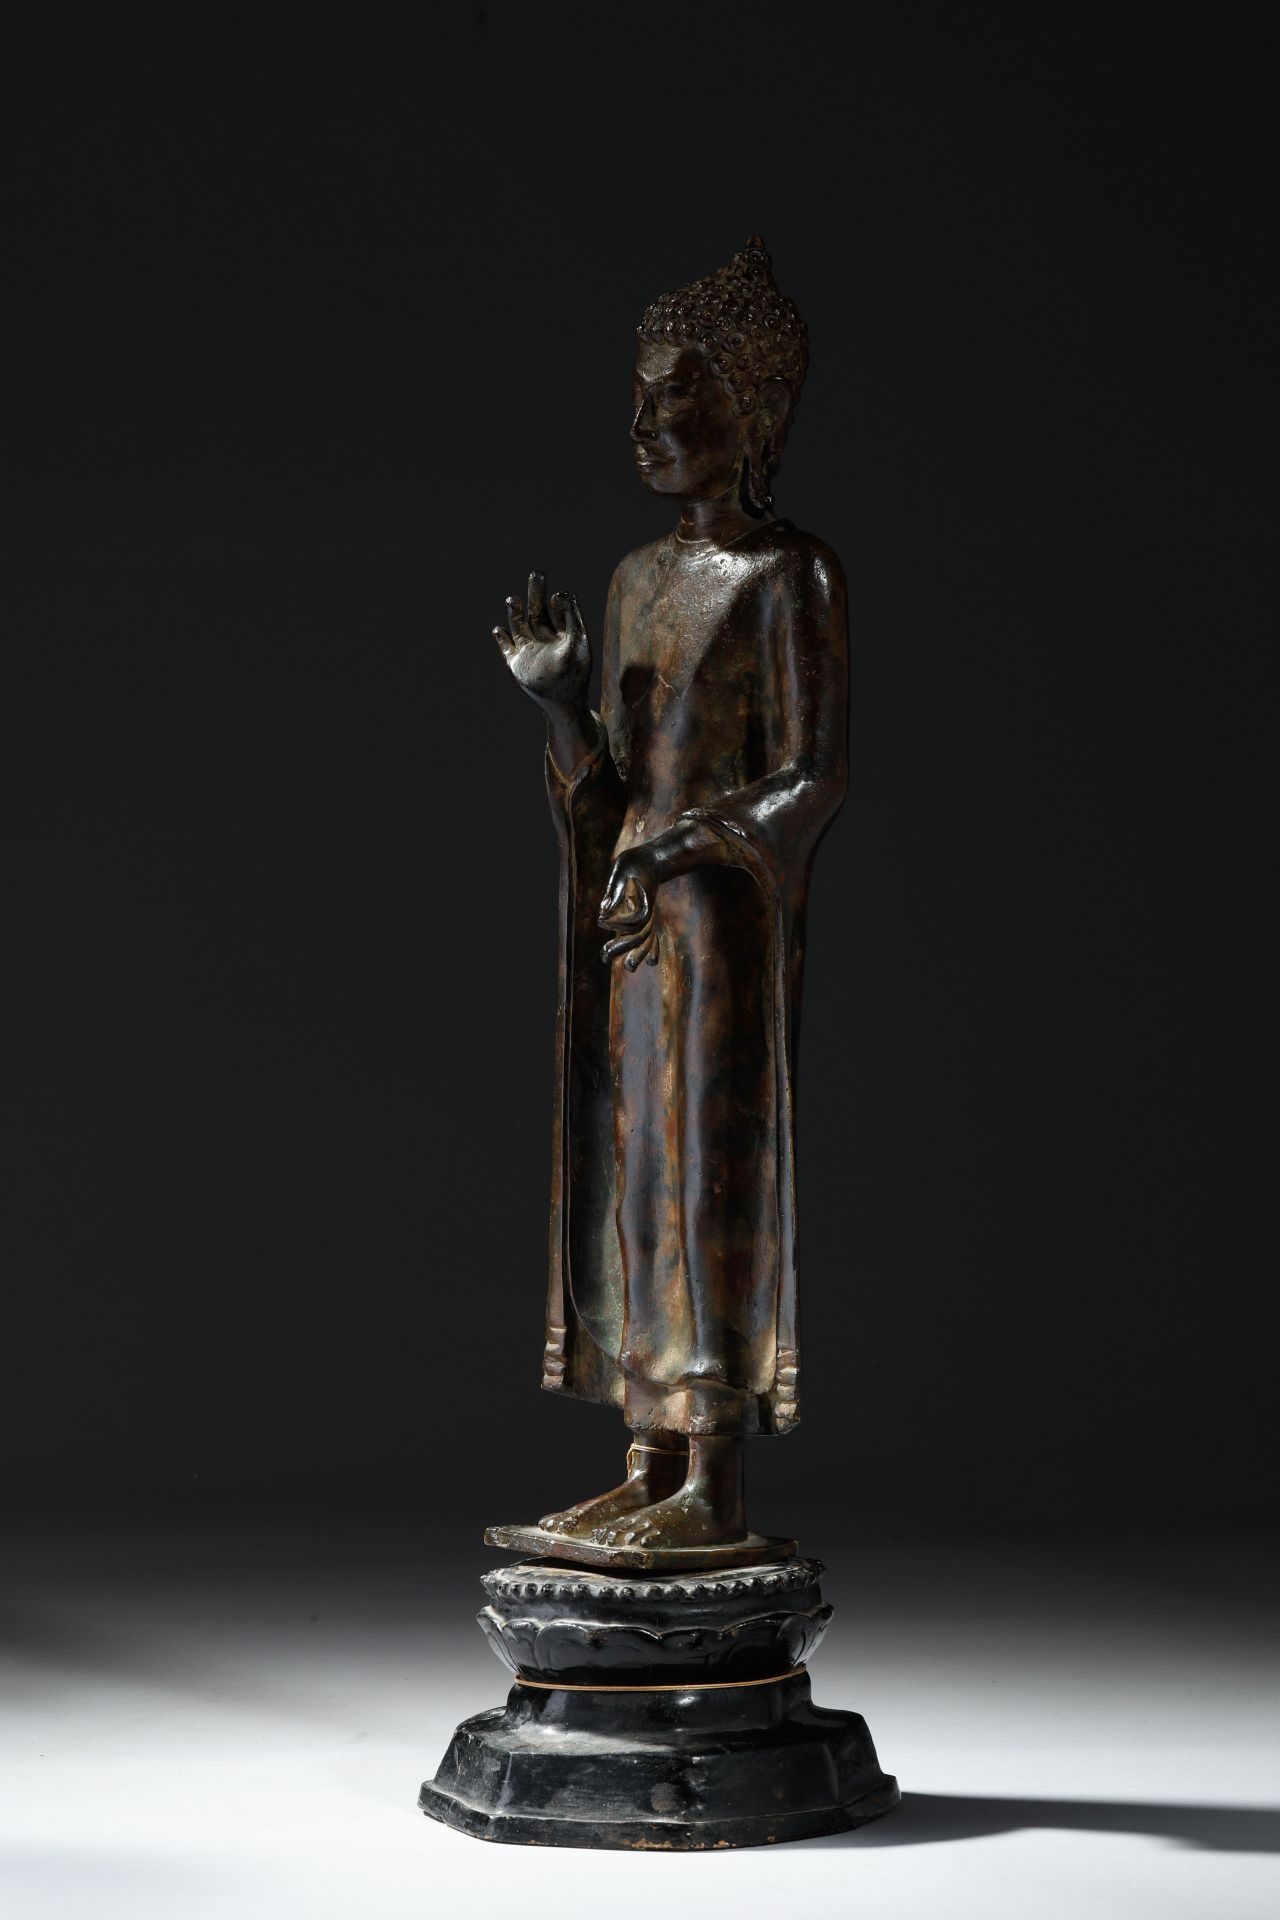 Buddha debout en posture hiératique, sur une base lotiforme , vêtu d’une robe monastique « - Image 2 of 6